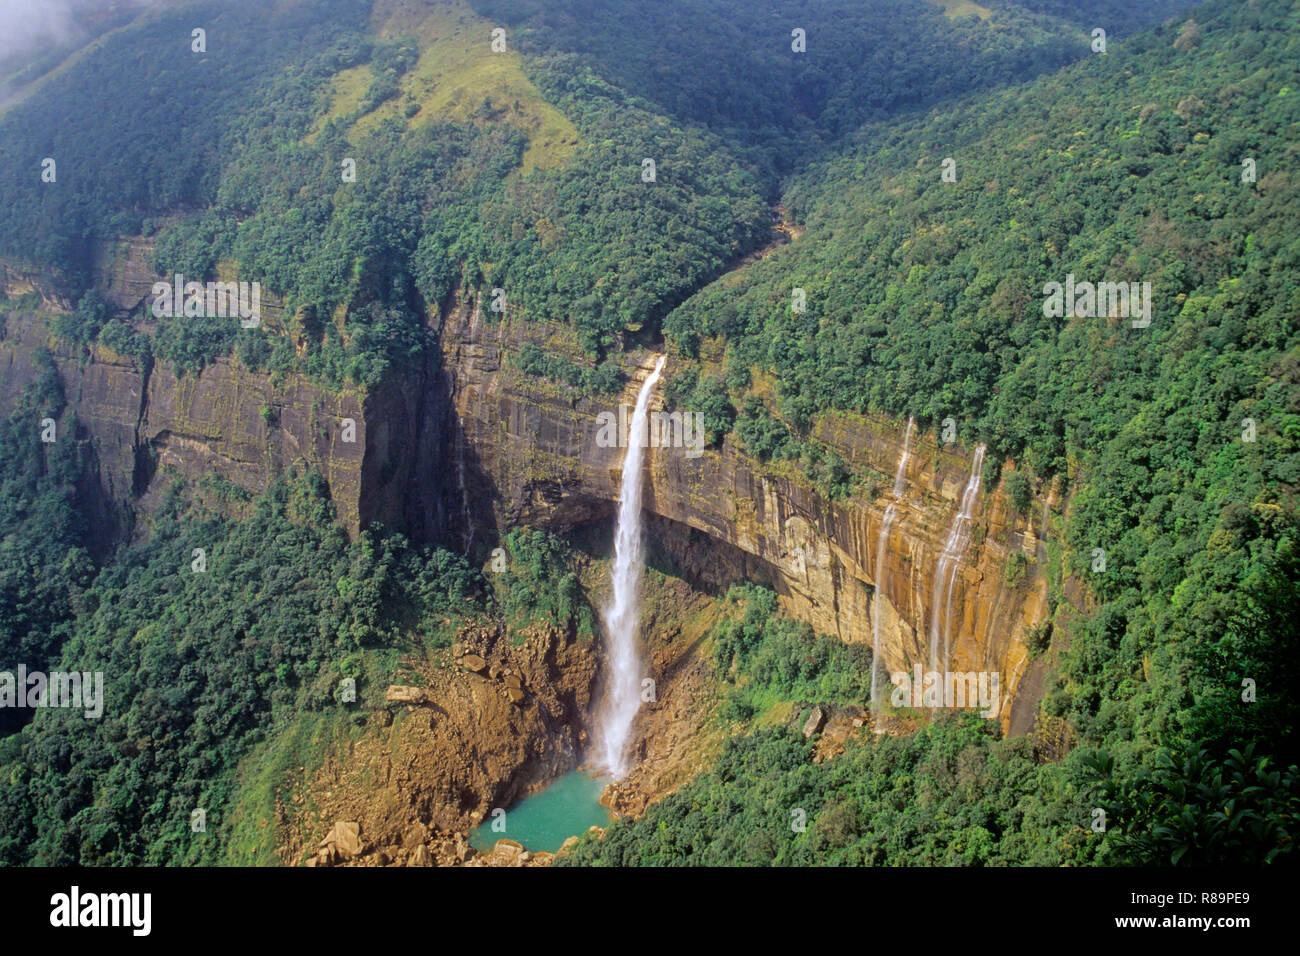 Shillong to Cherrapunji: How to reach Cherrapunji from Shillong | India.com